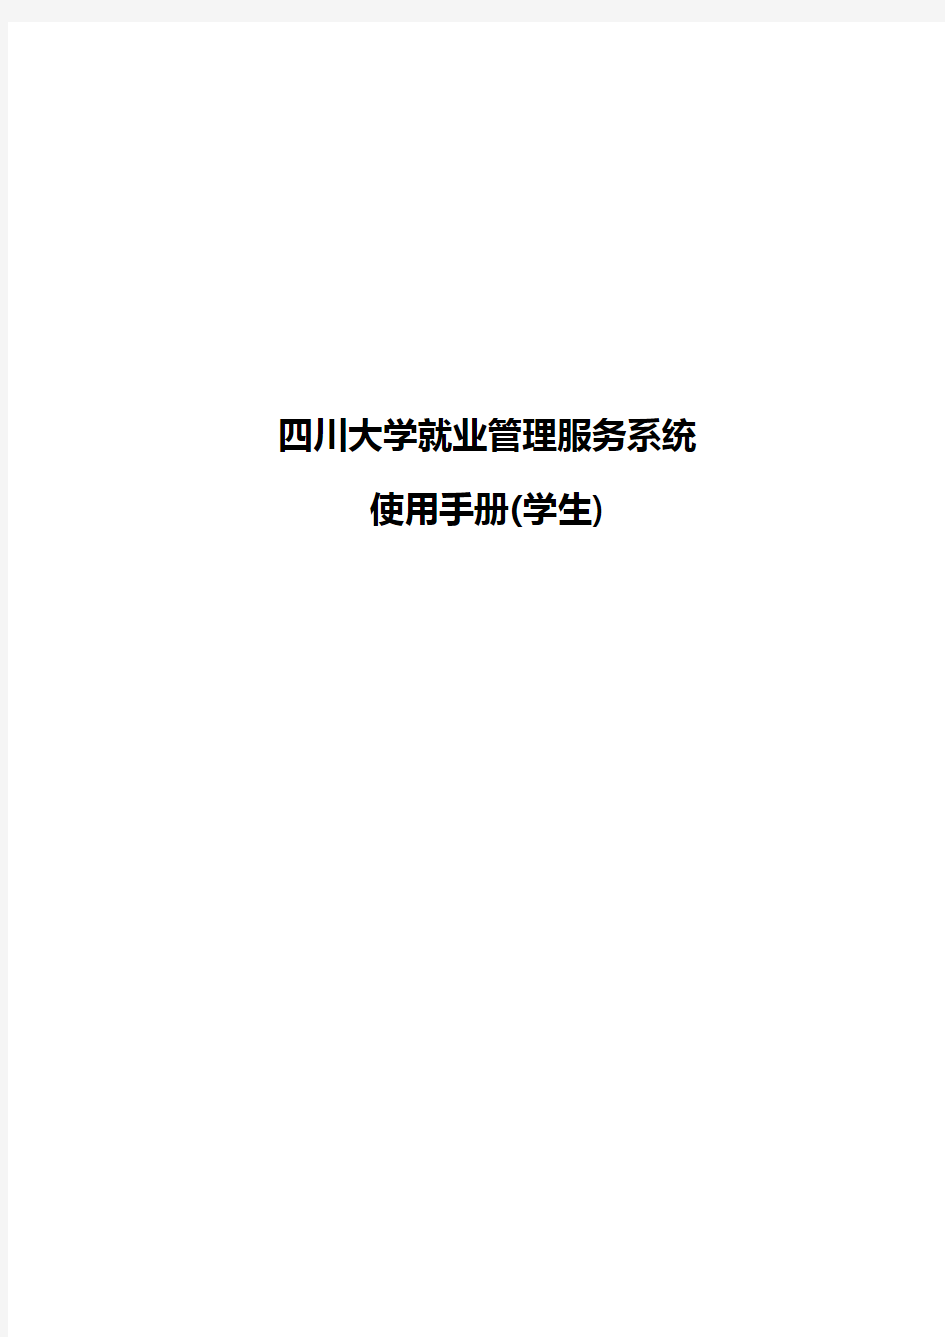 四川大学就业管理服务系统使用手册(学生)